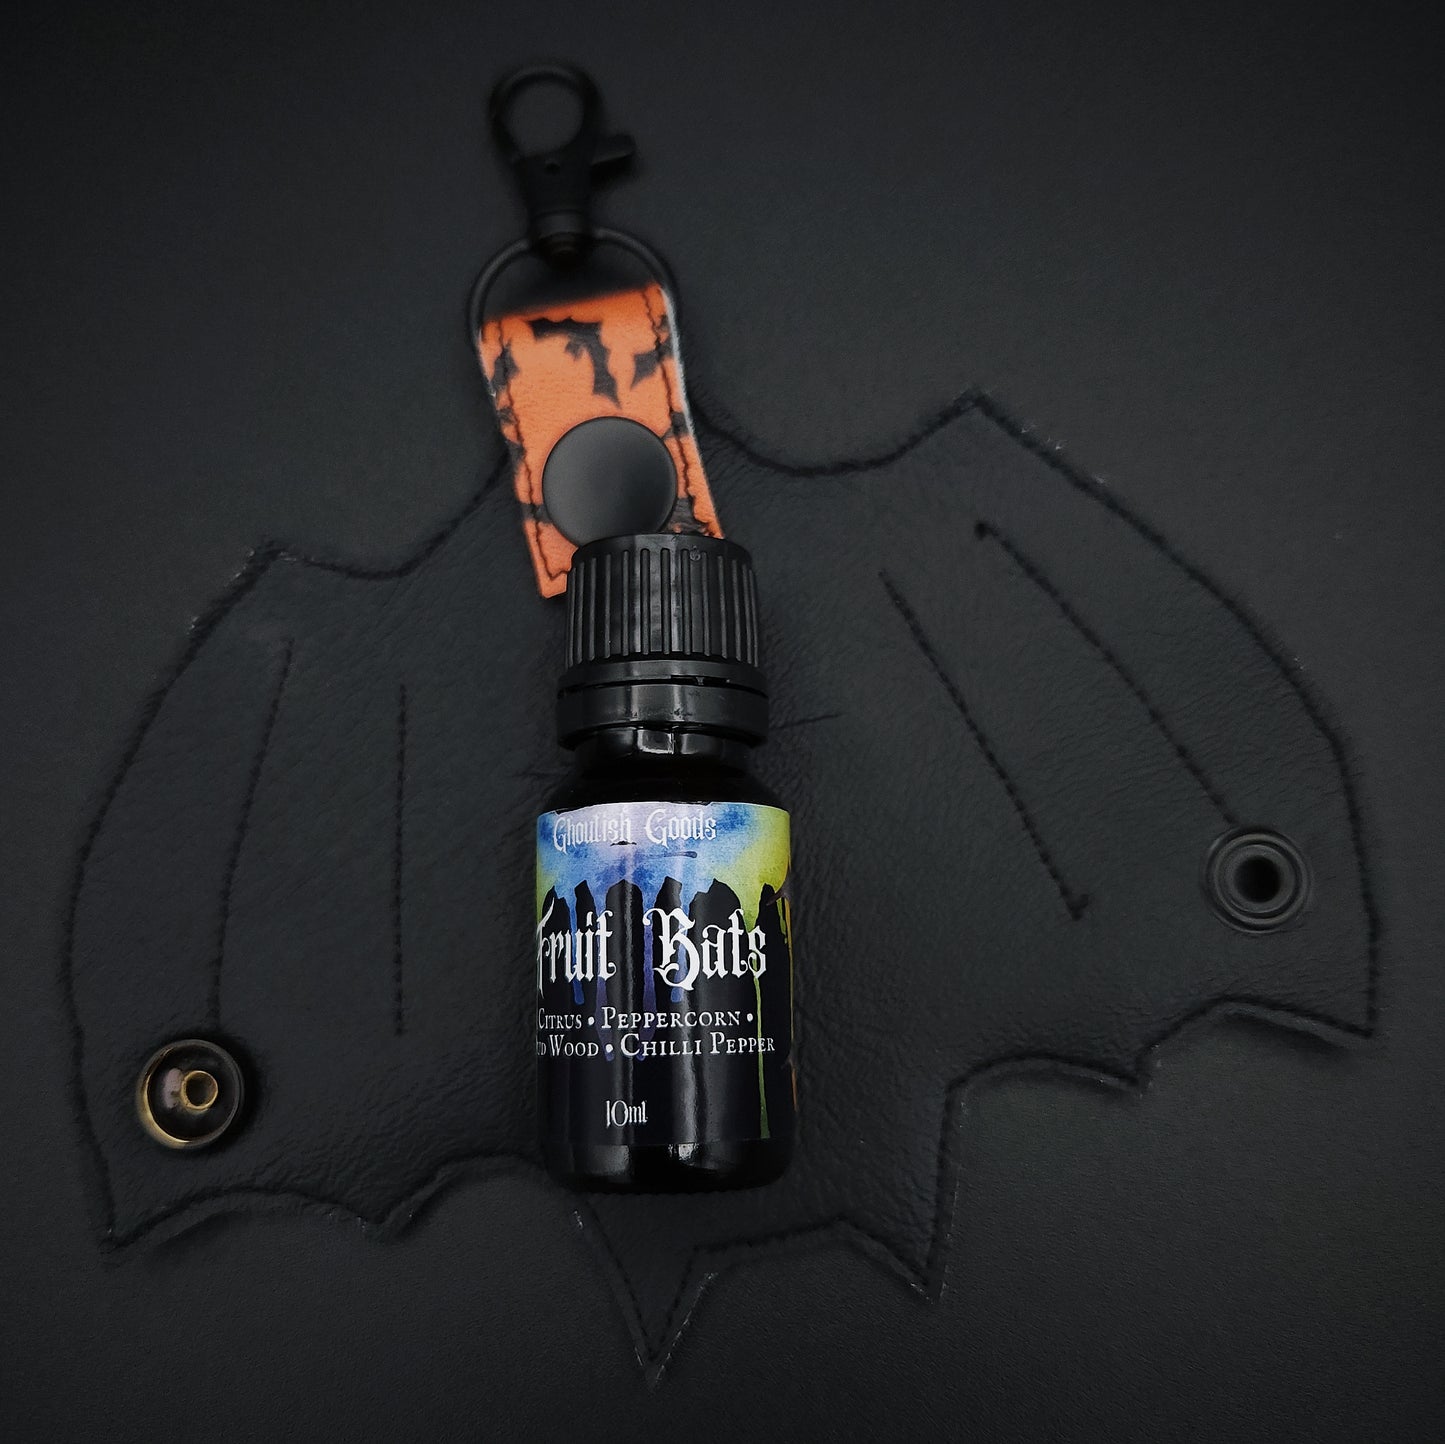 Bat Perfume Holder Keychain - Orange Bat